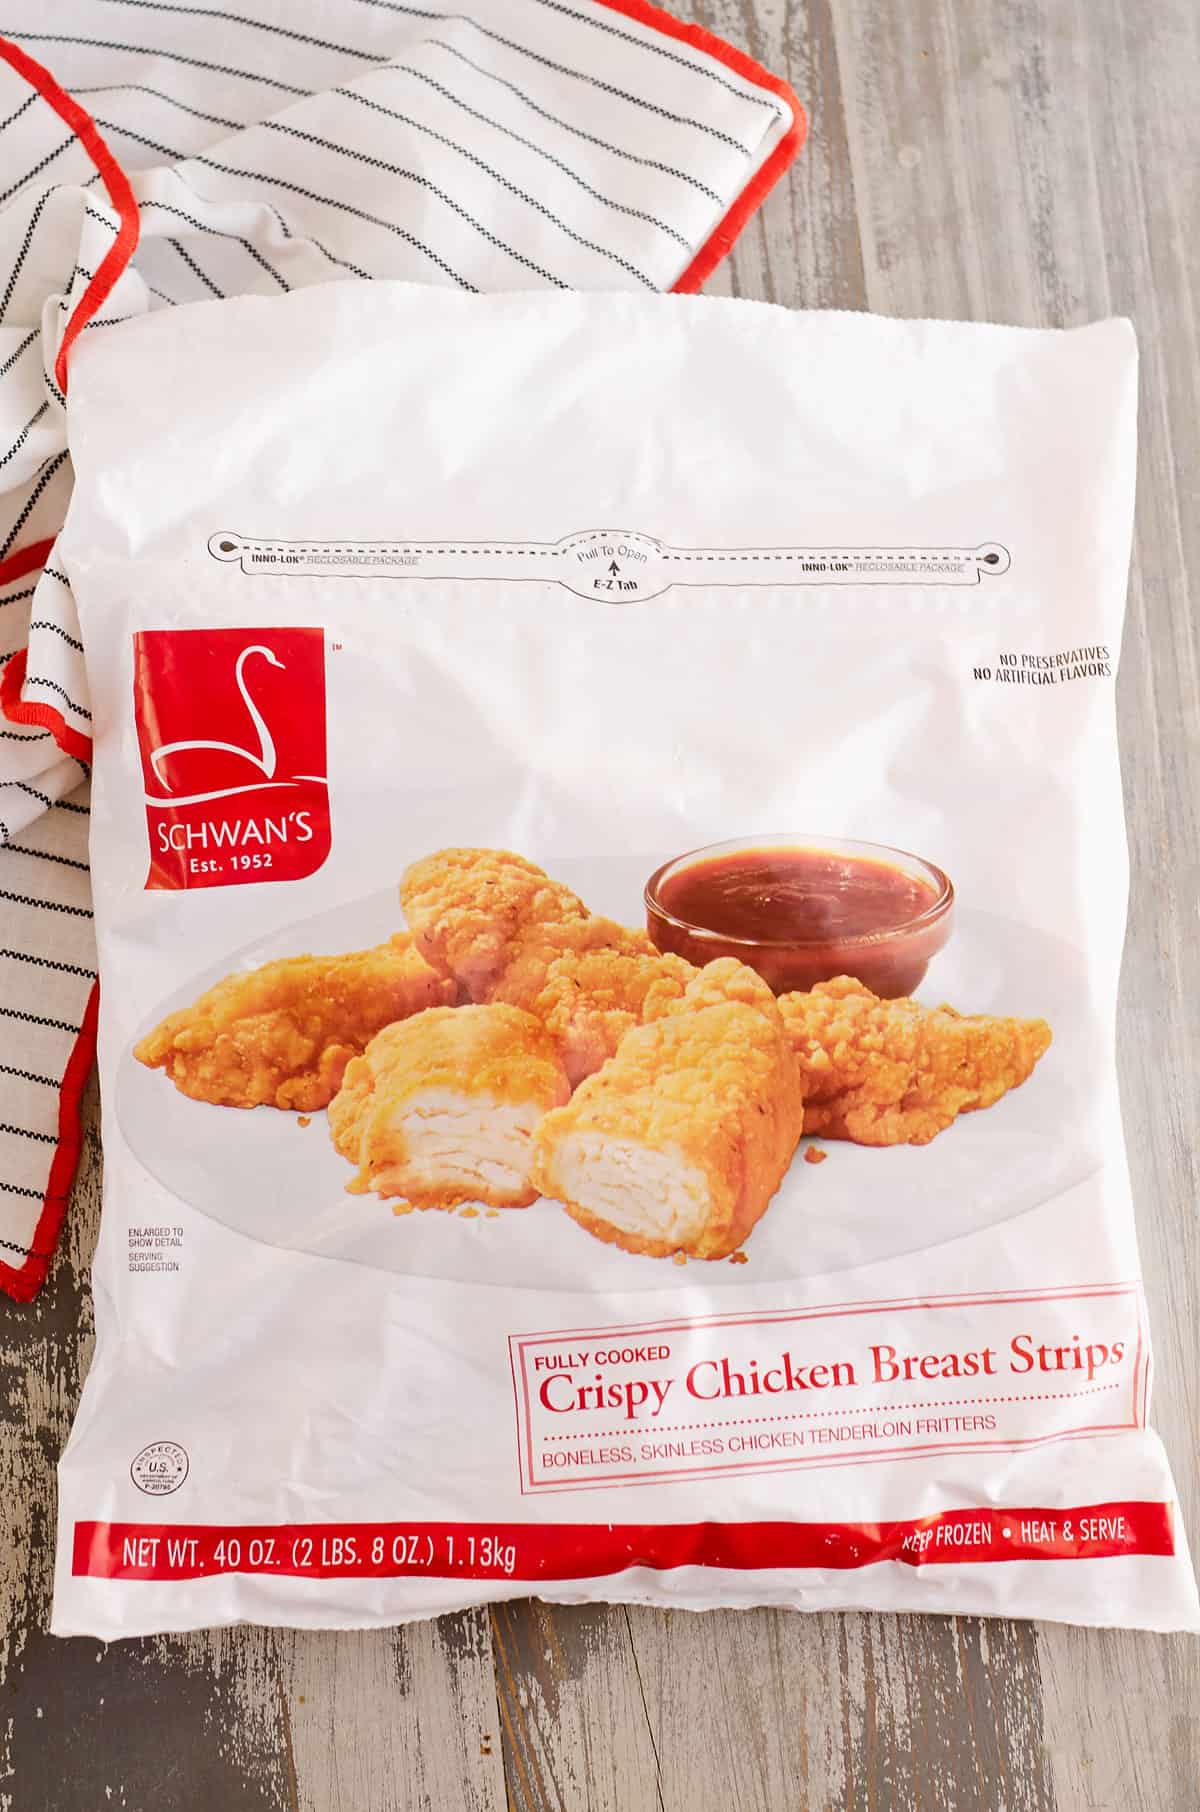 Schwan's Frozen Crispy Chicken Breast Strips package